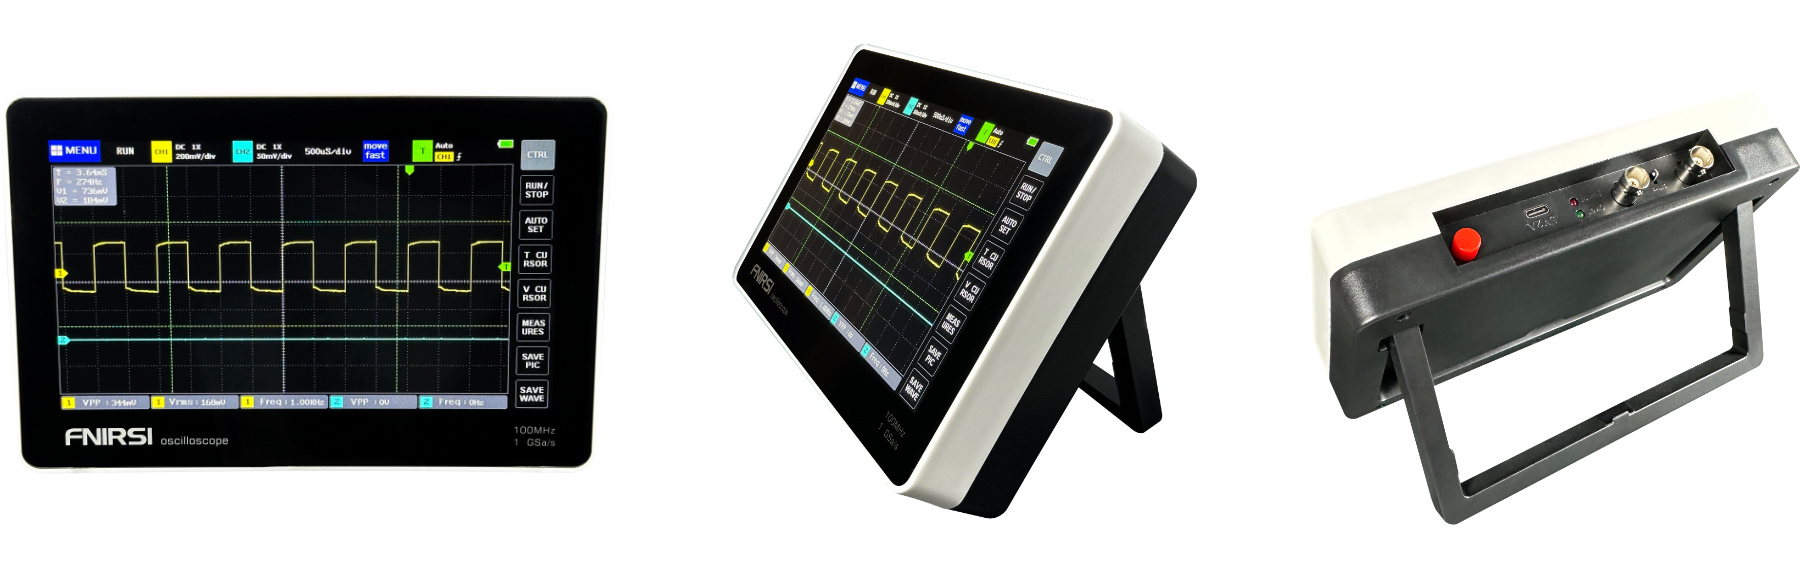 fnirsi 1013d tablet digital oscilloscope qro.cz hamparts.shop